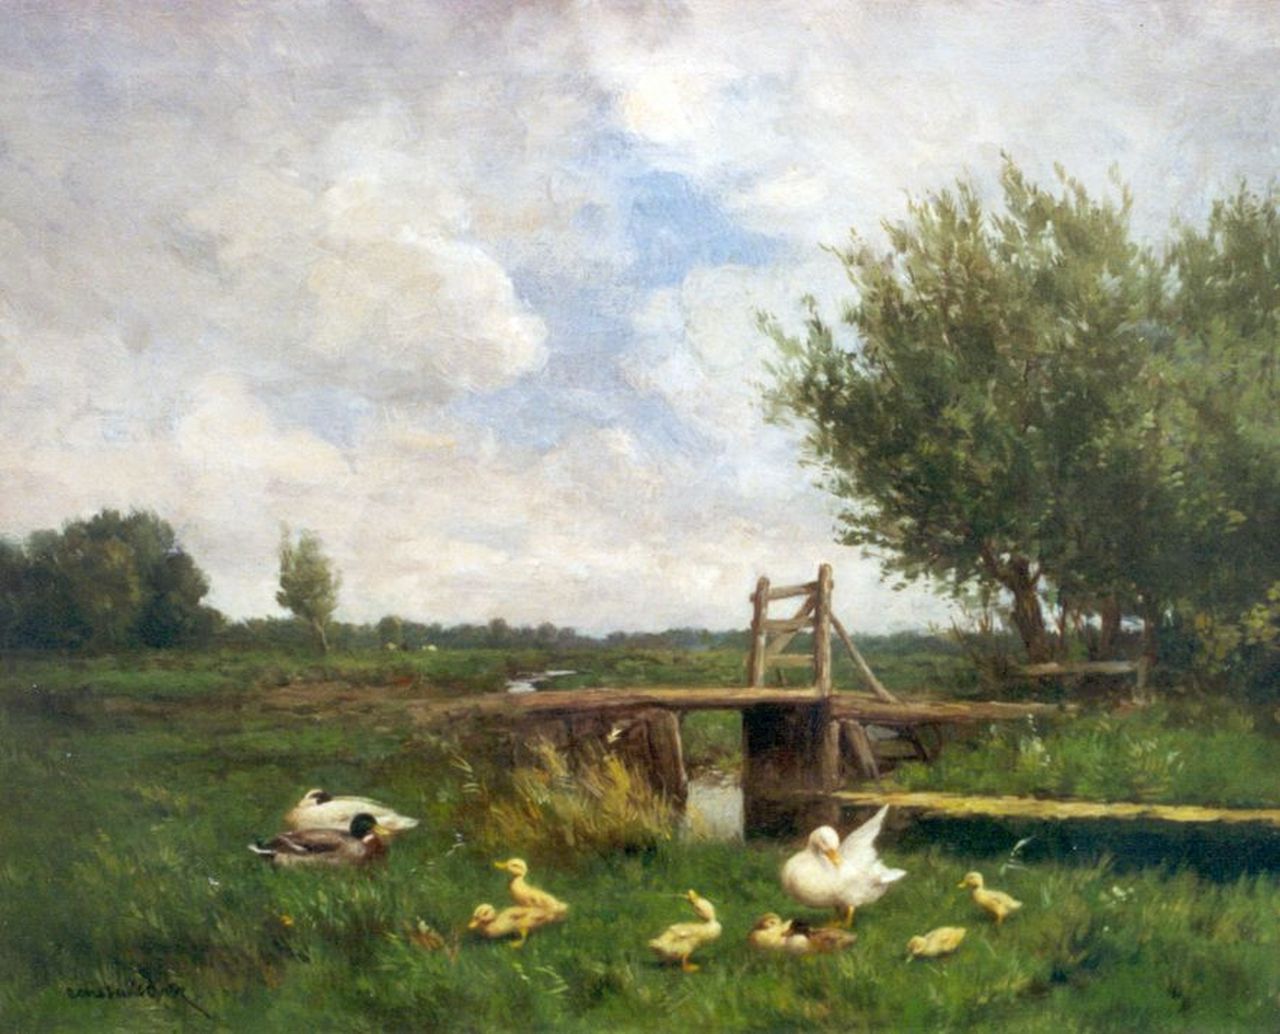 Artz C.D.L.  | 'Constant' David Ludovic Artz, Ducks in a polder landscape, Öl auf Leinwand 40,7 x 50,4 cm, signed l.l.